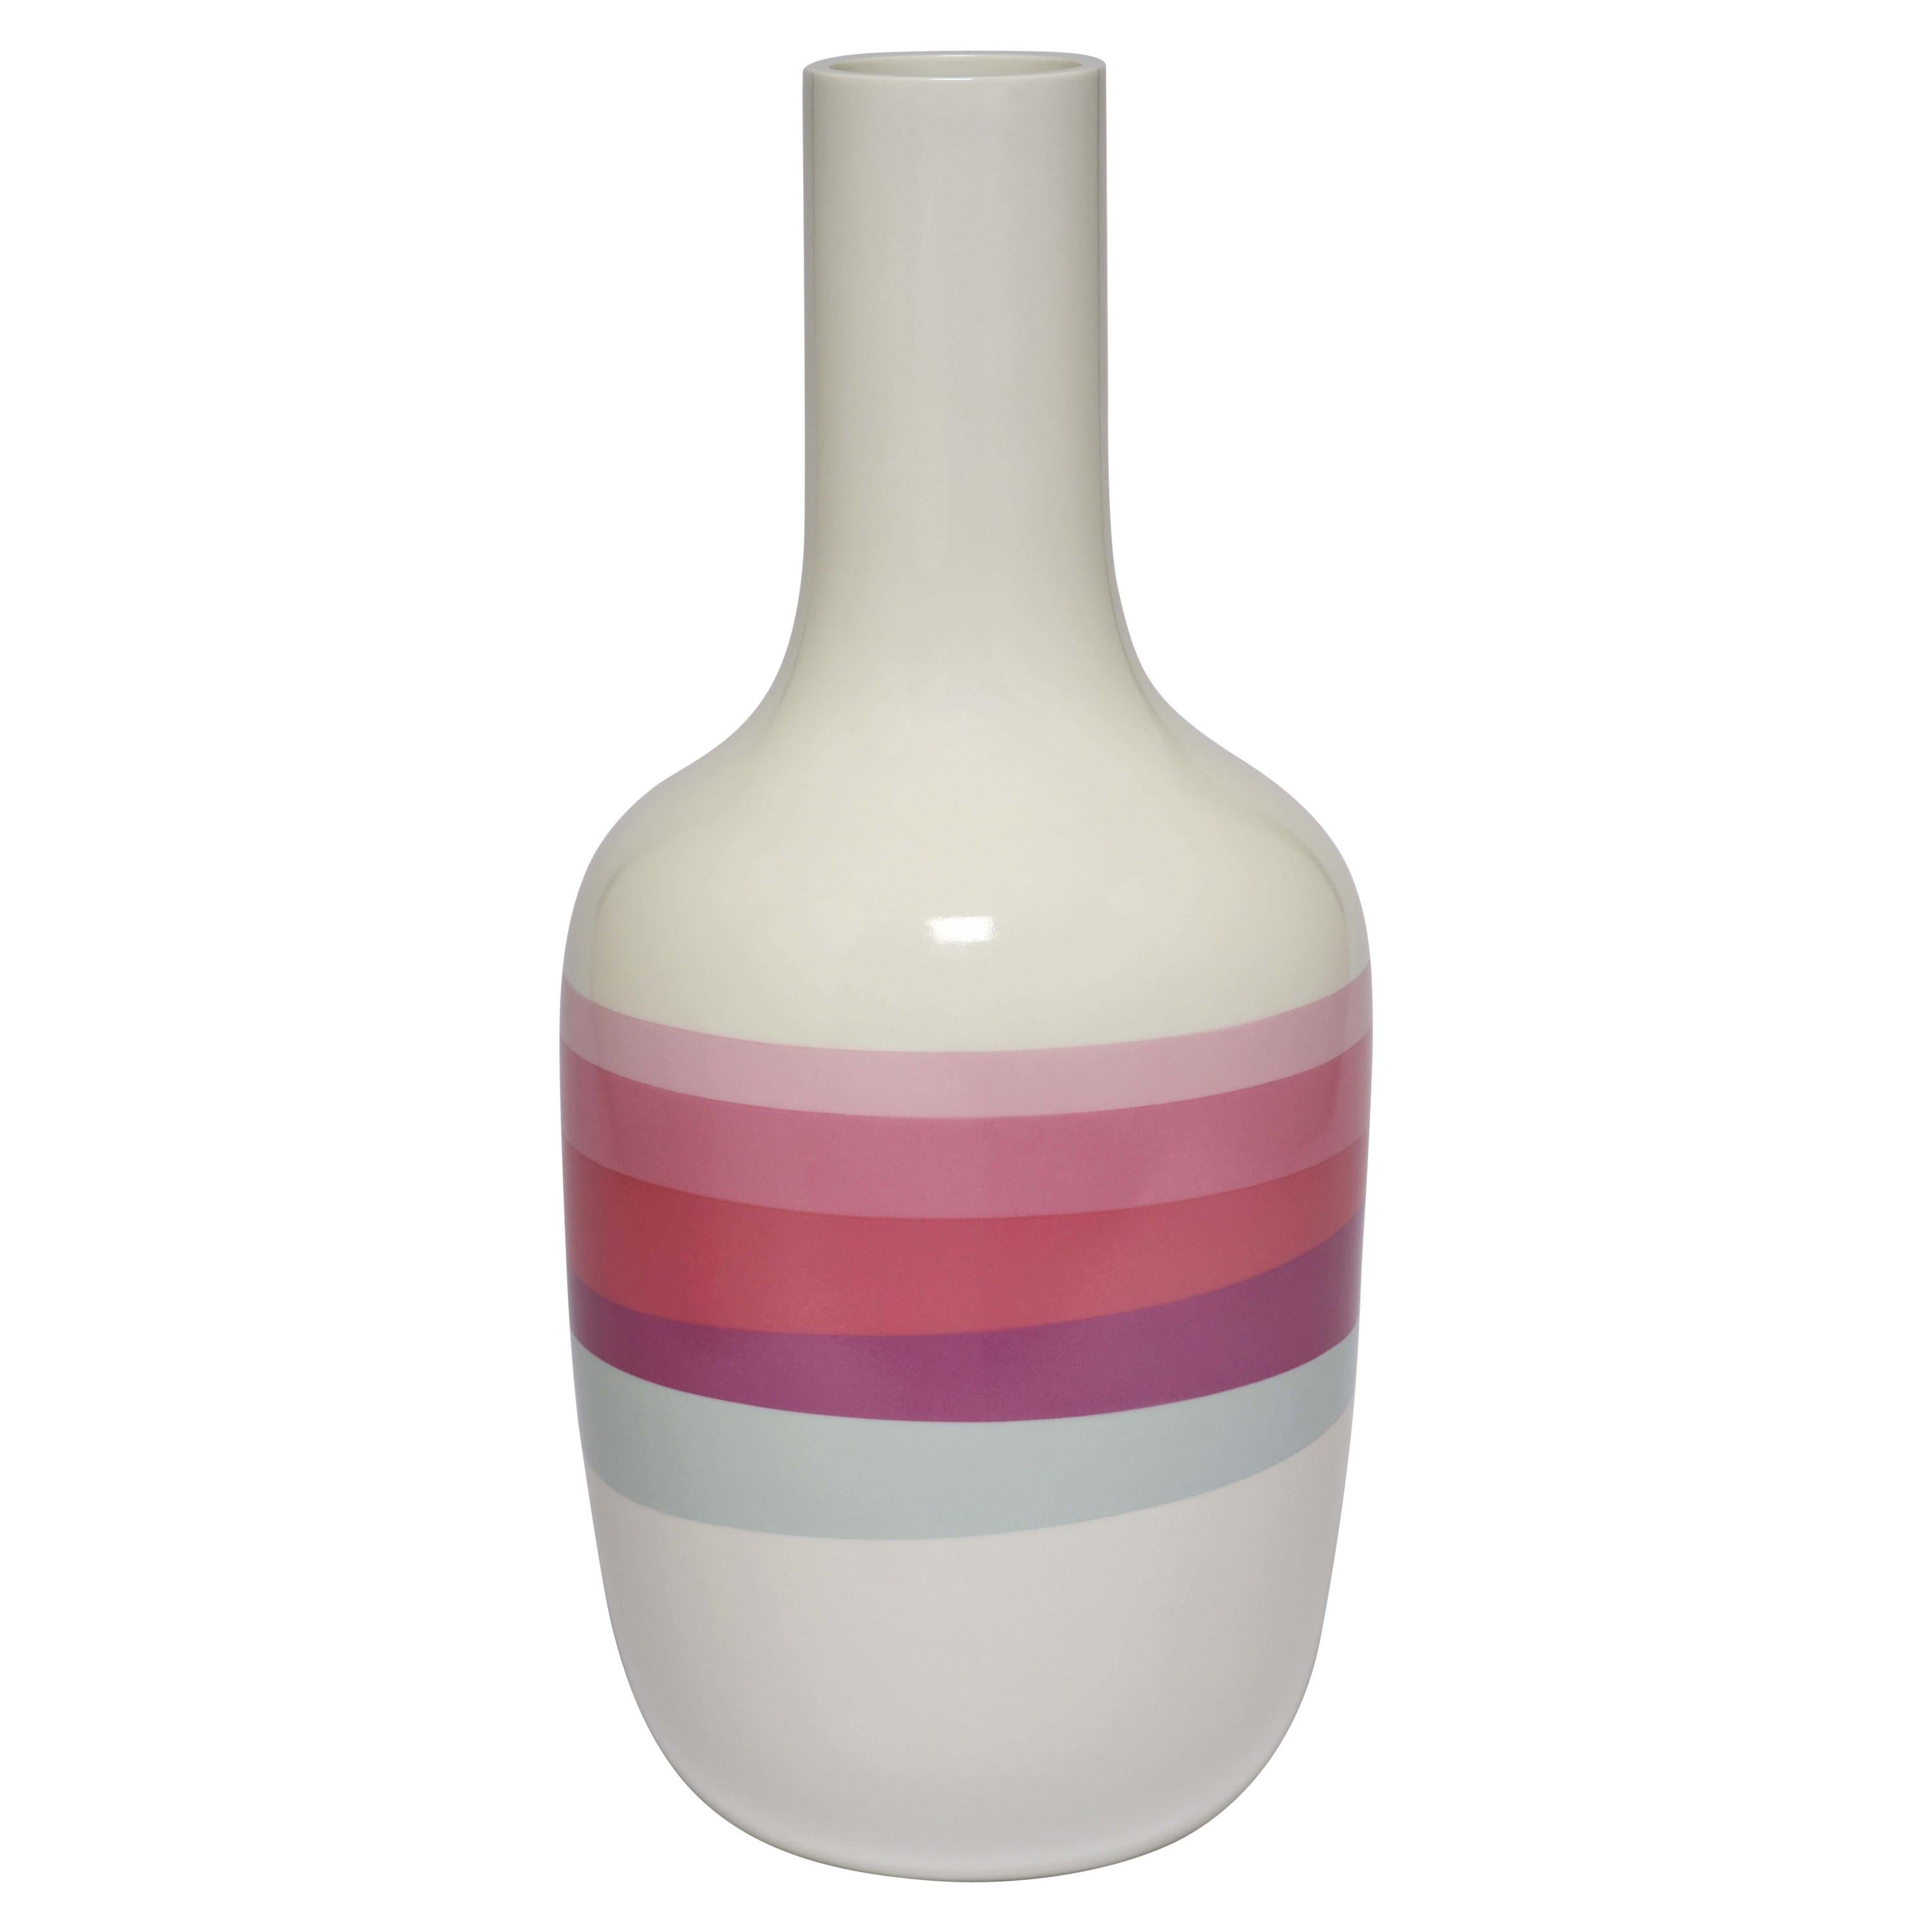 Scholten & Baijings 2.1 Vase in Porcelain by Manufacture Nationale de Sèvres For Sale